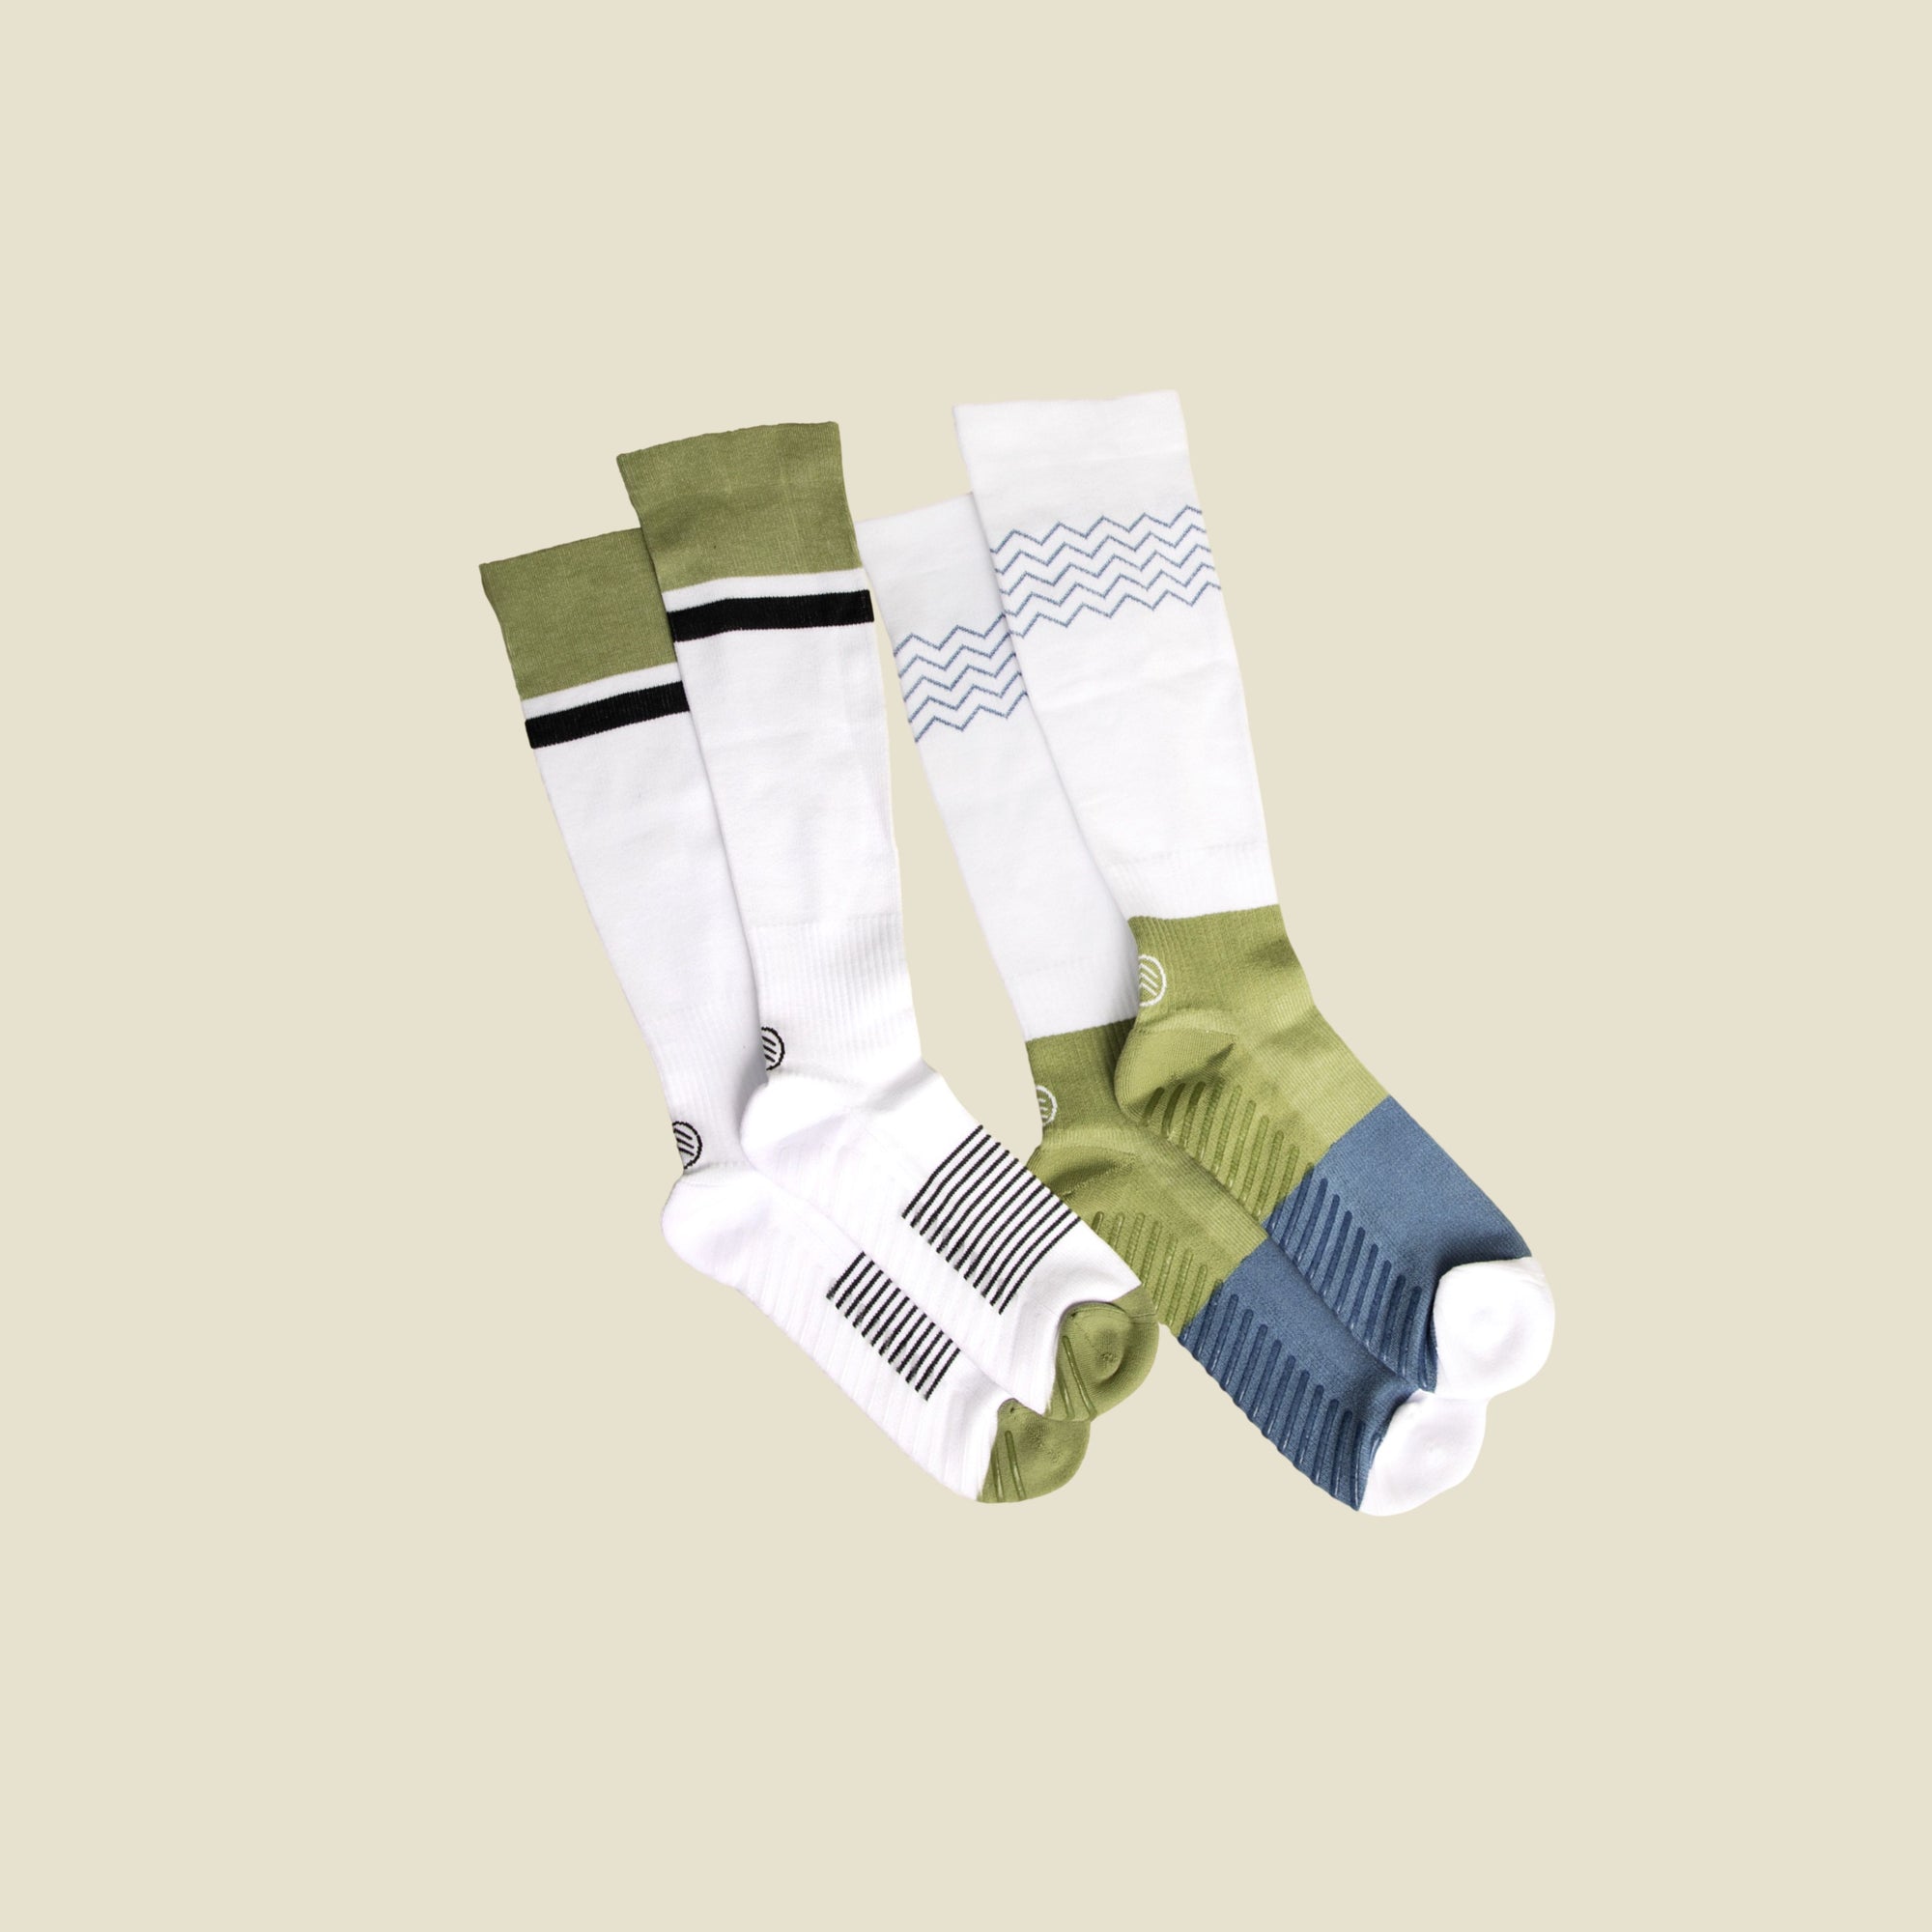 Purple Grip Socks for Toddlers & Kids - 4 pairs - Gripjoy Socks